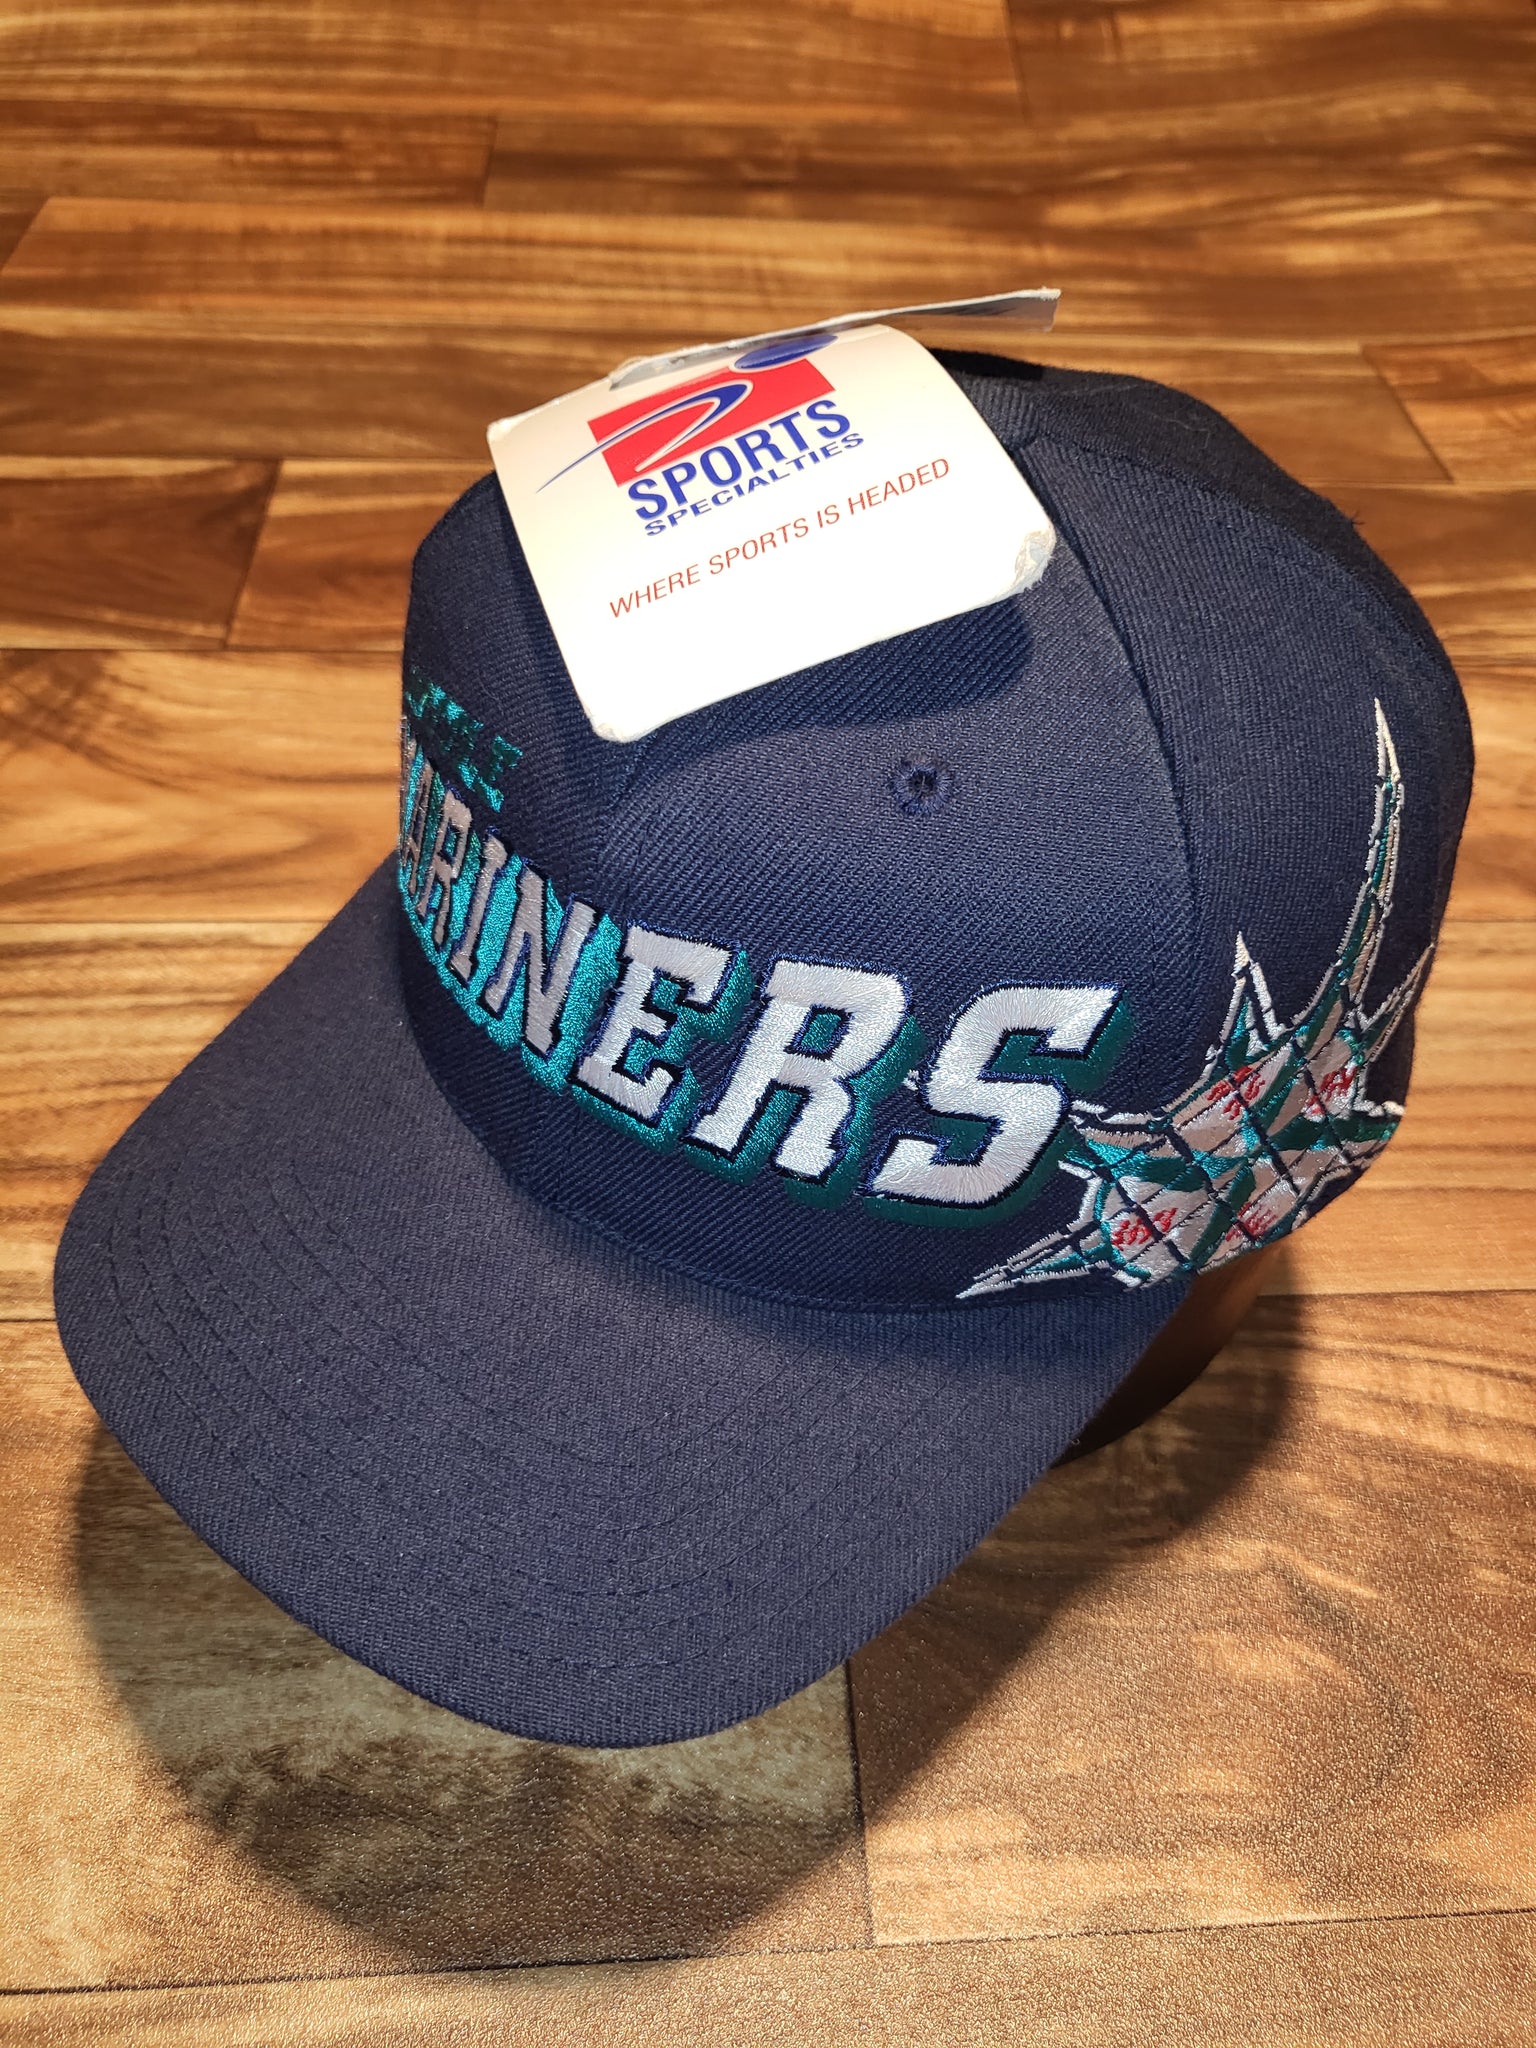 Vintage 90s Seattle Mariners Steelheads Snapback MLB Baseball Hat SGA